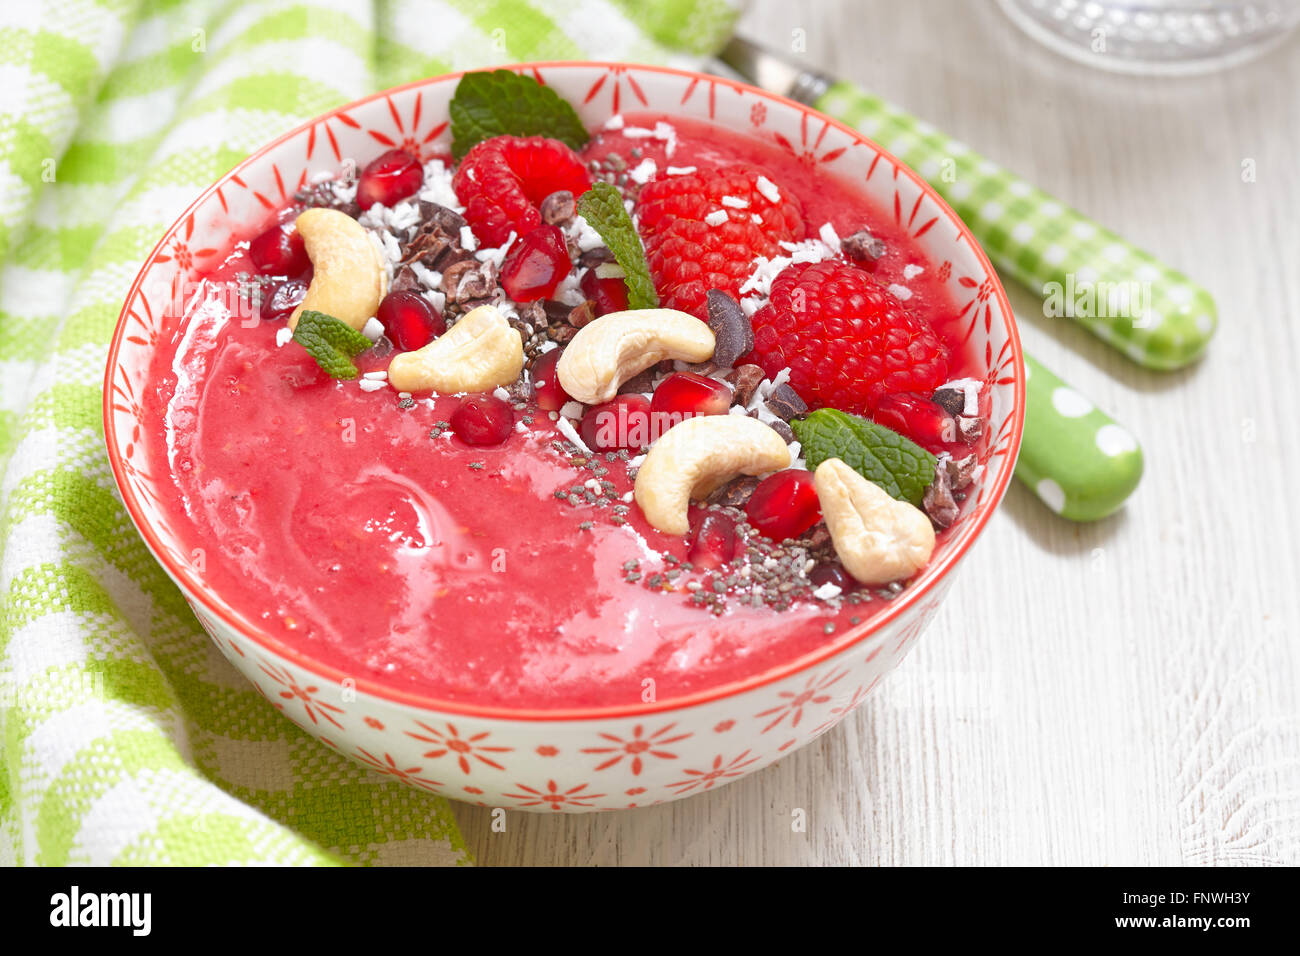 Raspberry smoothie bowl Stock Photo